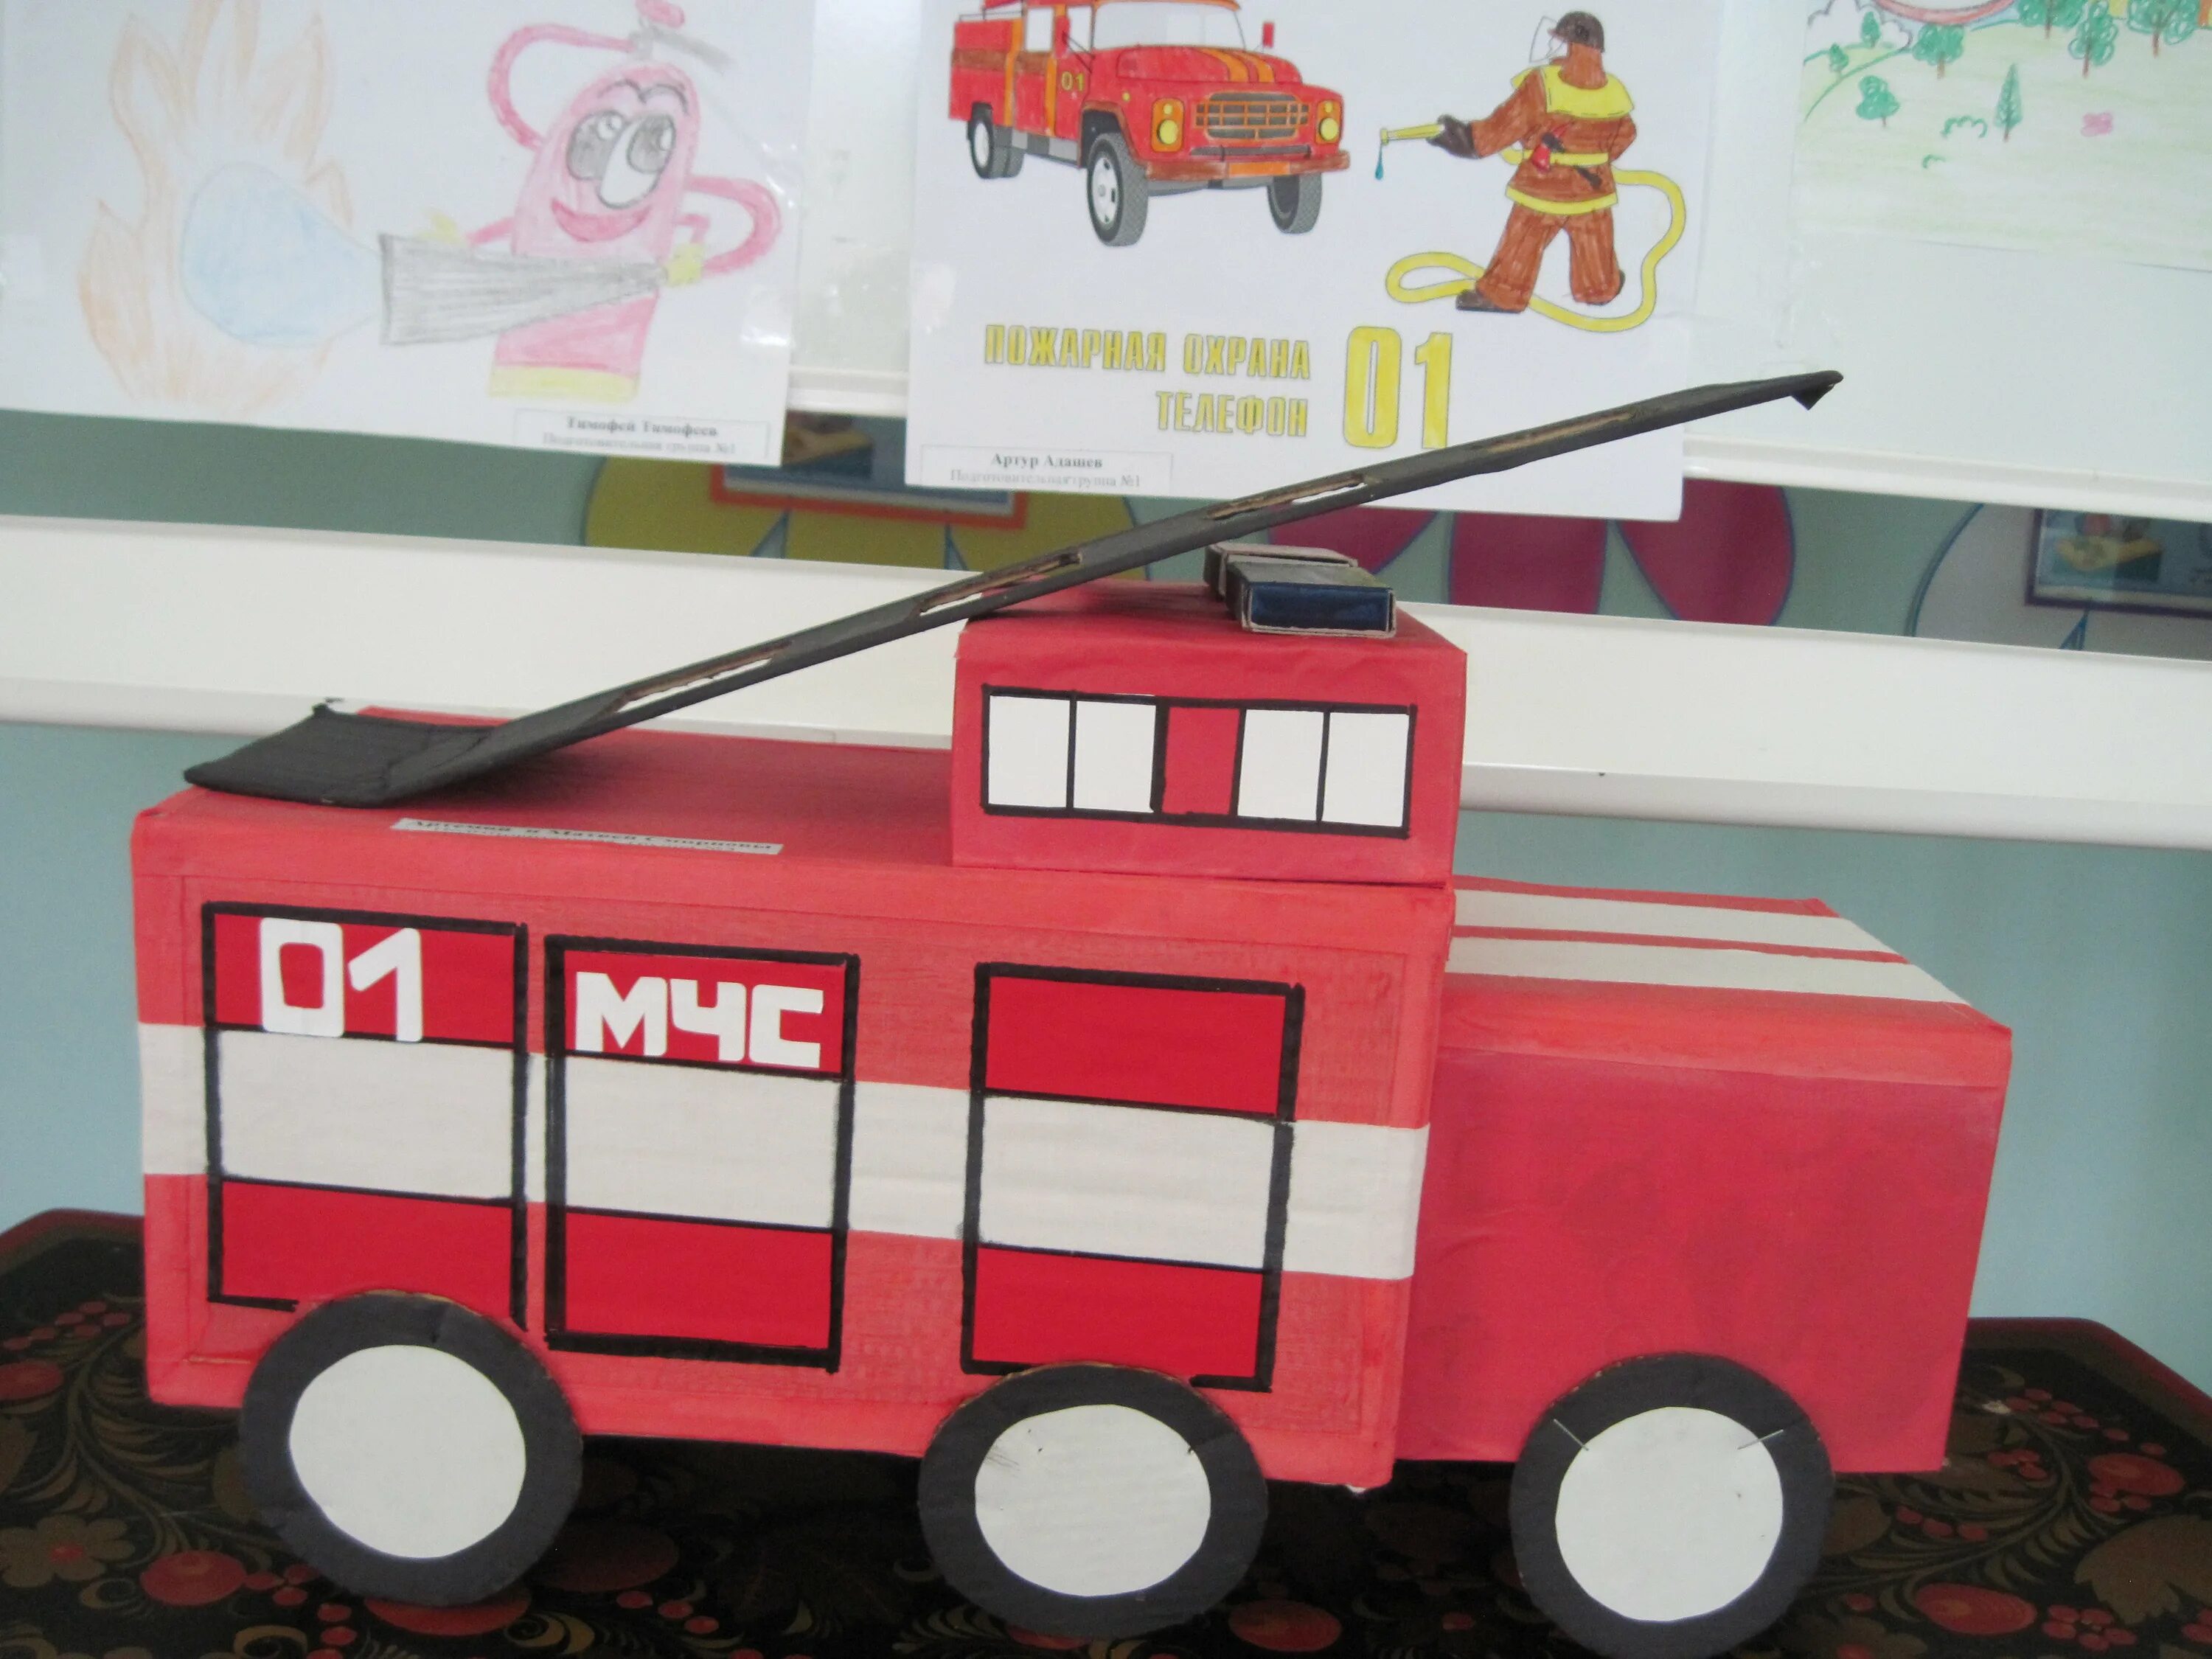 Пожарная машина средняя группа. Пожарная машина поделка. Пожарная машина своими руками для детского сада. Пожарная машина поделка из картона. Пожарная машина из спичечных Коробков.